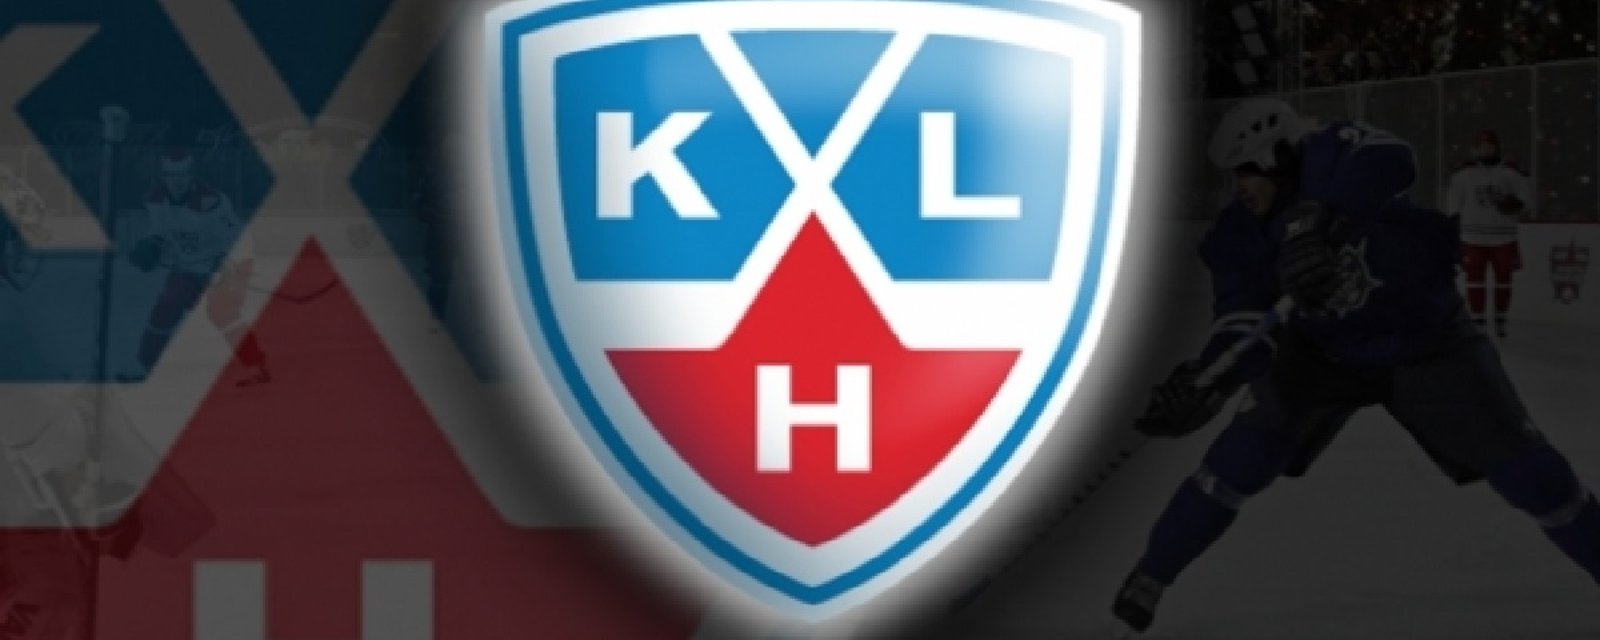 3 joueurs de la KHL bannis pour dopage!